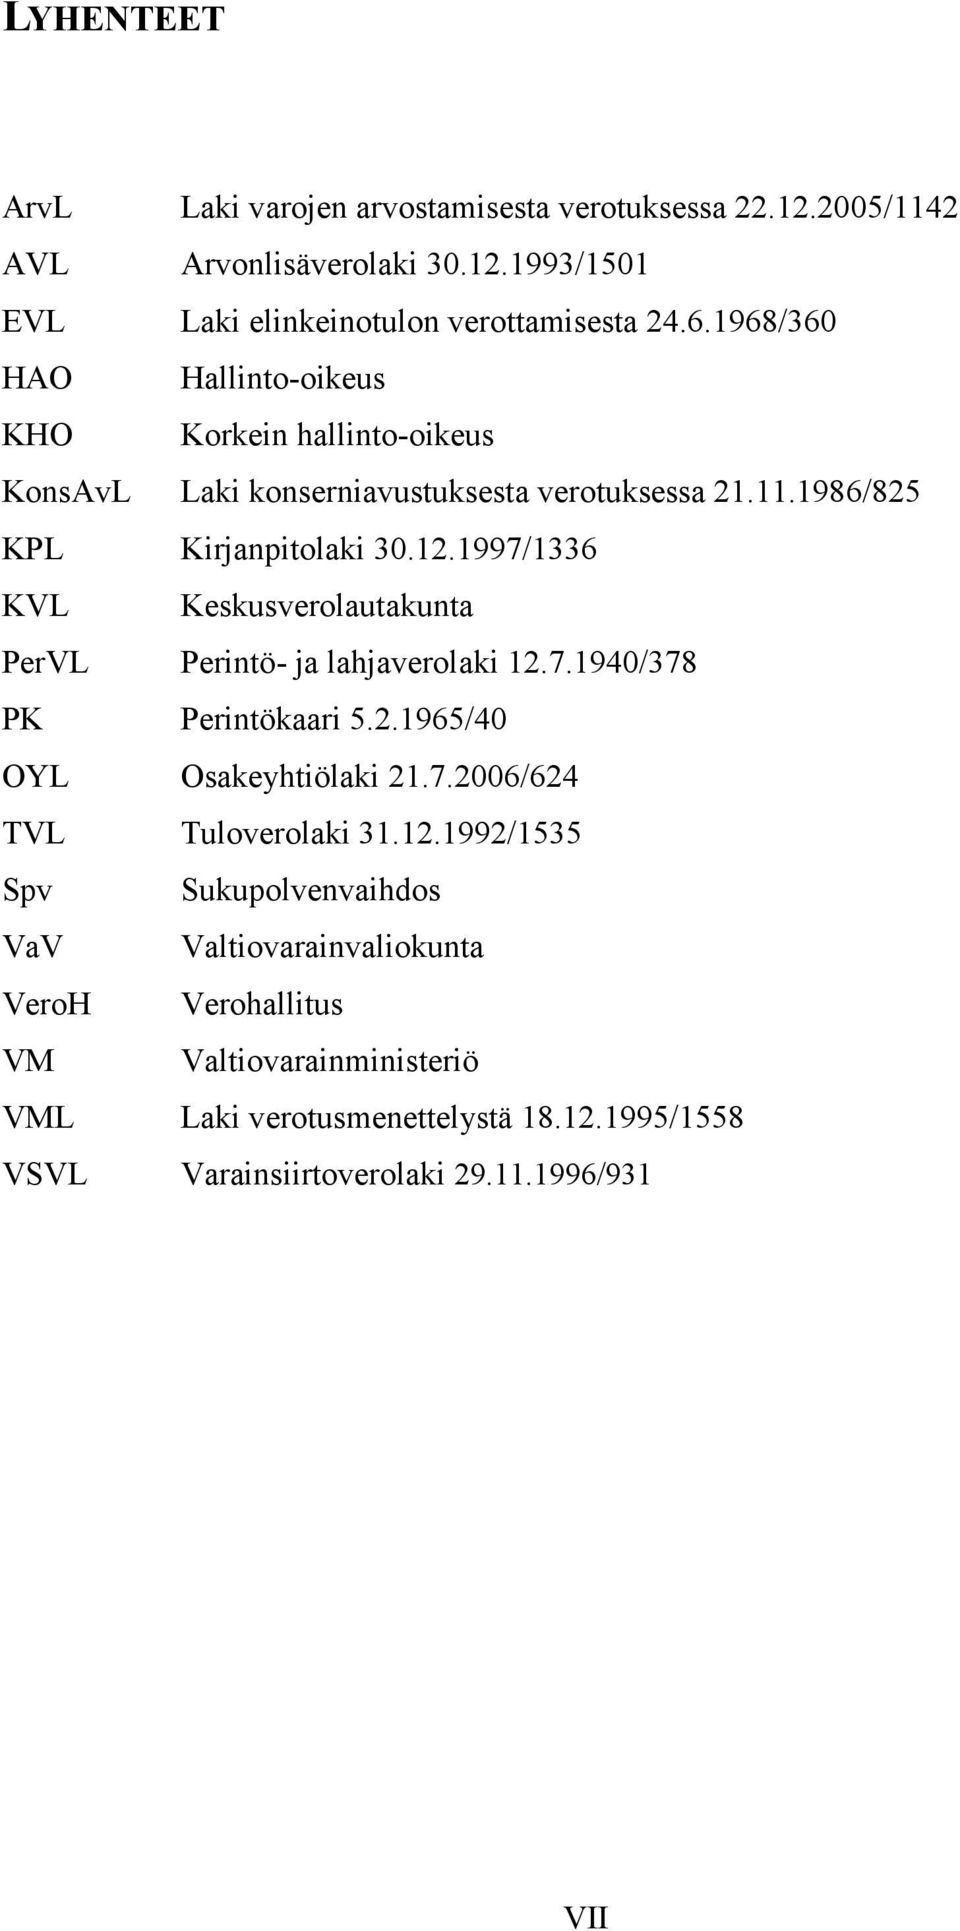 1997/1336 KVL Keskusverolautakunta PerVL Perintö- ja lahjaverolaki 12.7.1940/378 PK Perintökaari 5.2.1965/40 OYL Osakeyhtiölaki 21.7.2006/624 TVL Tuloverolaki 31.